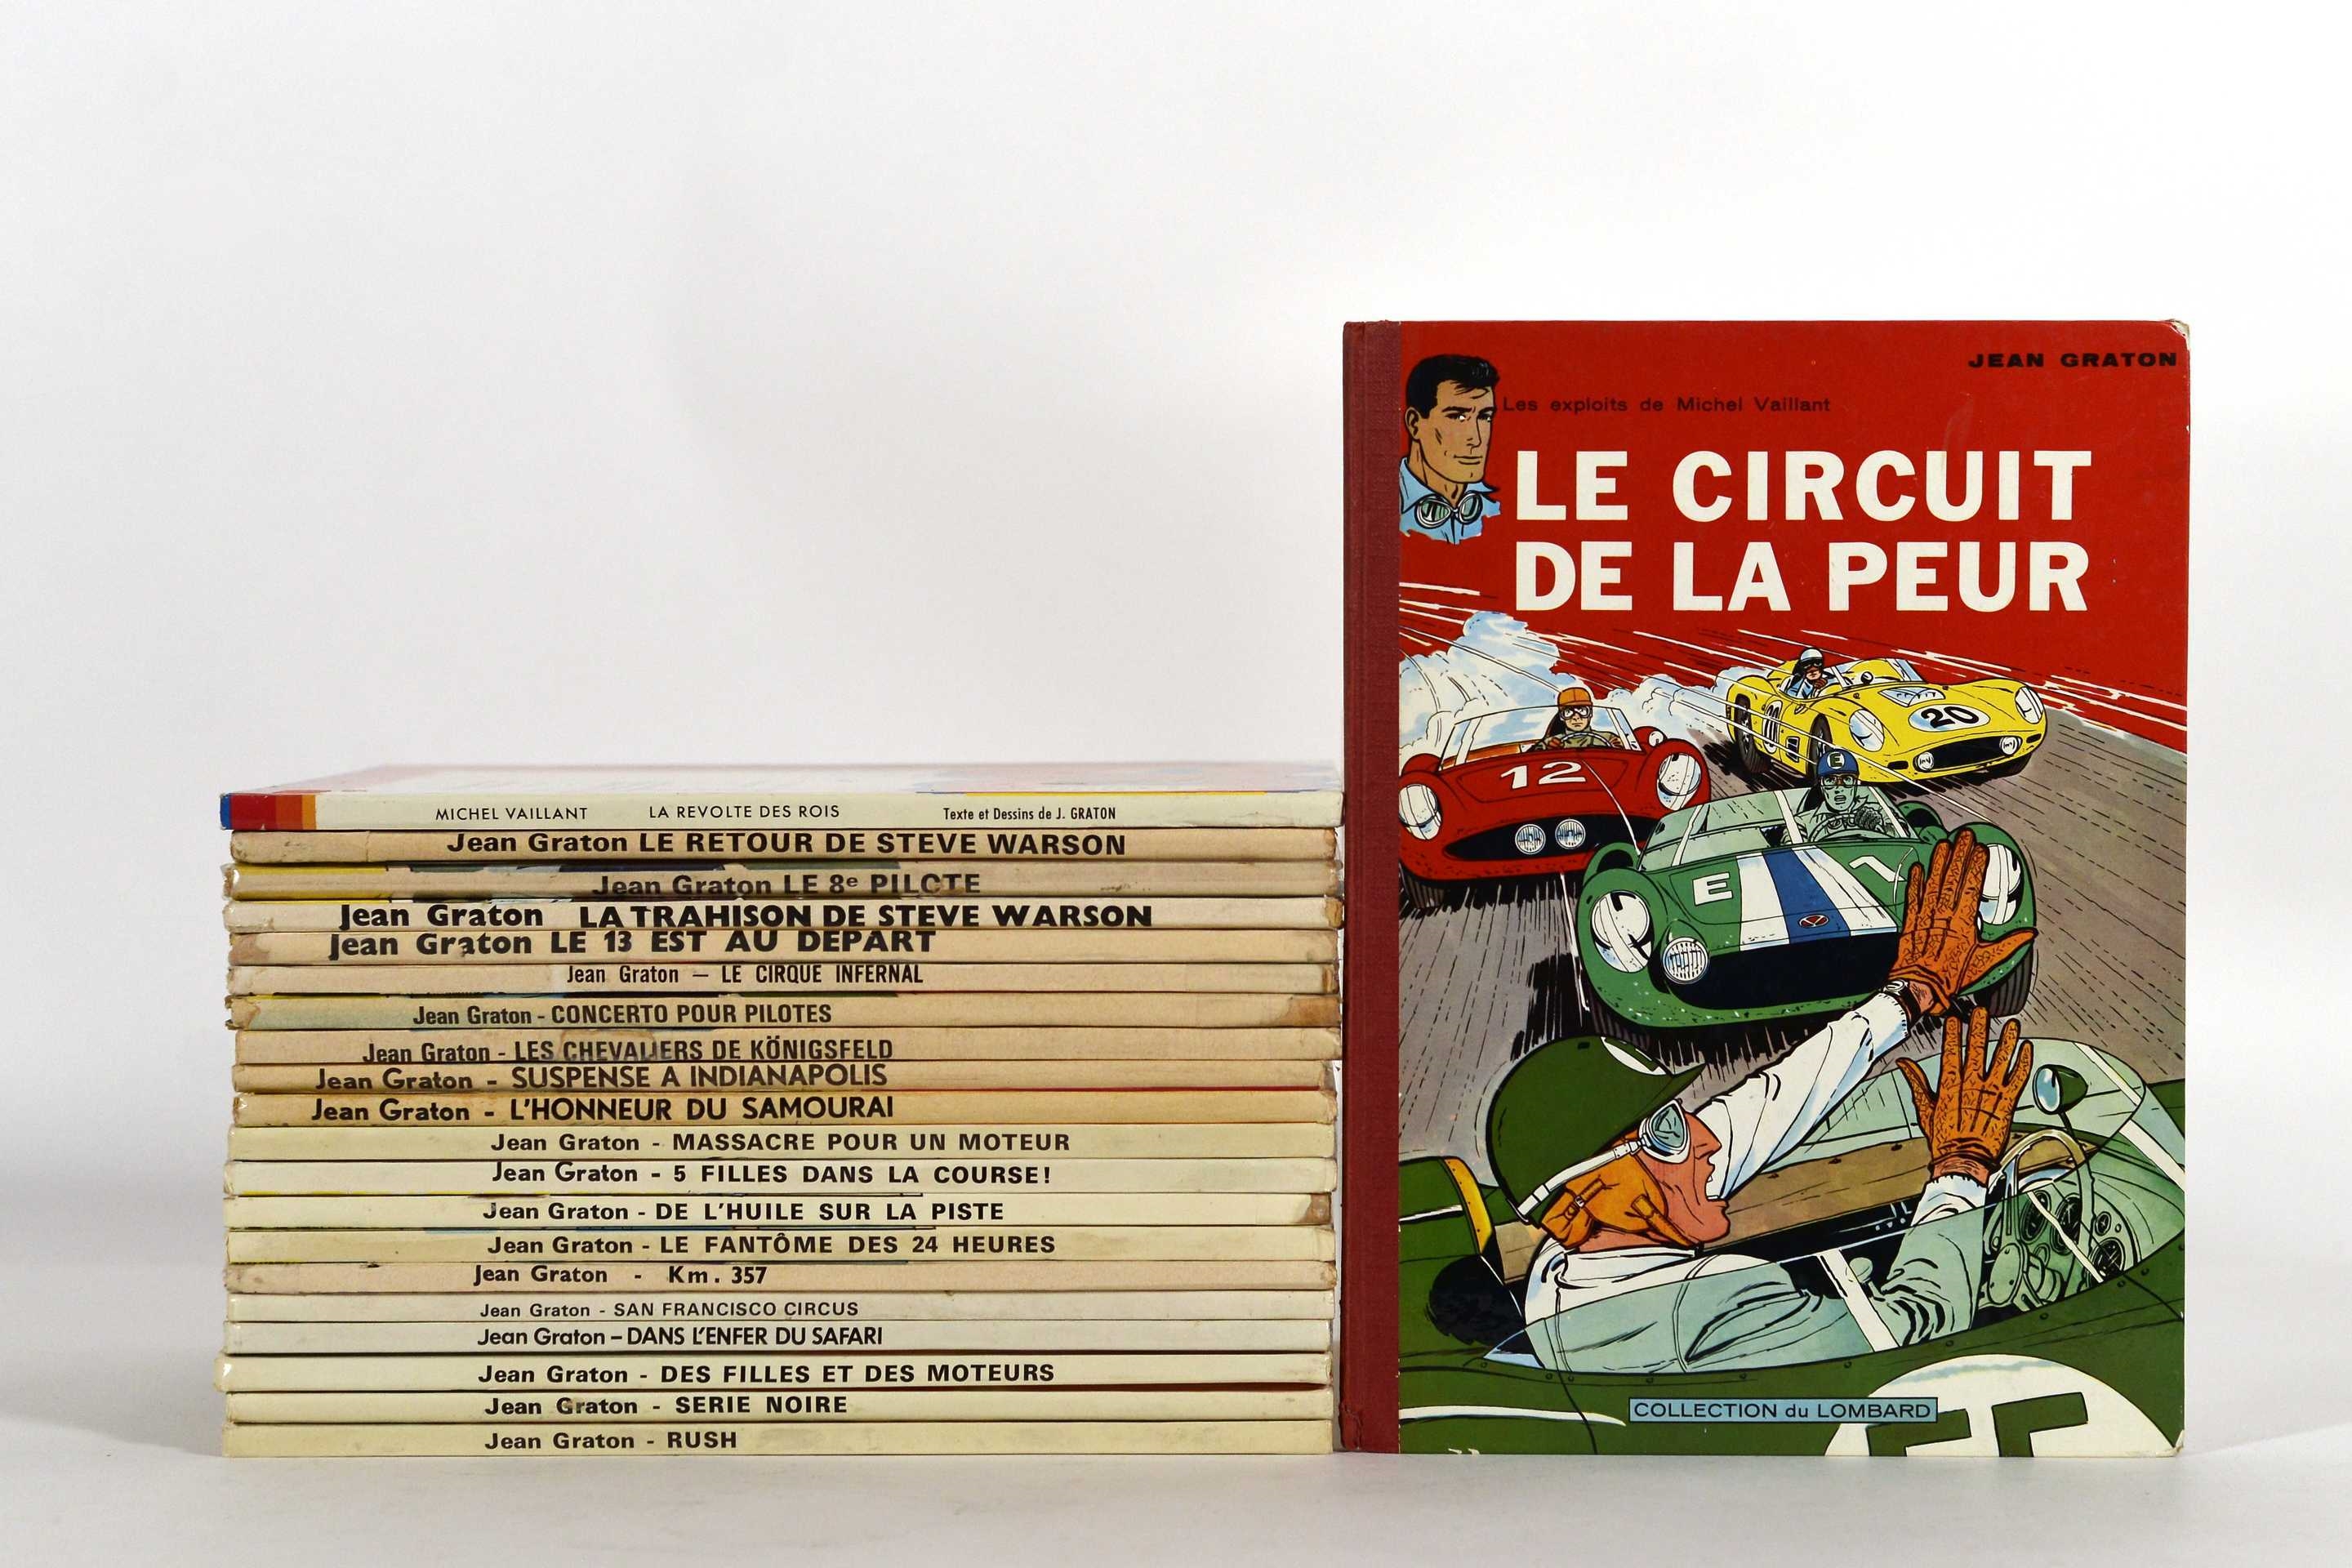 Collection d'albums Michel Vaillant (1961 à 1978) by Jean Graton, 1961